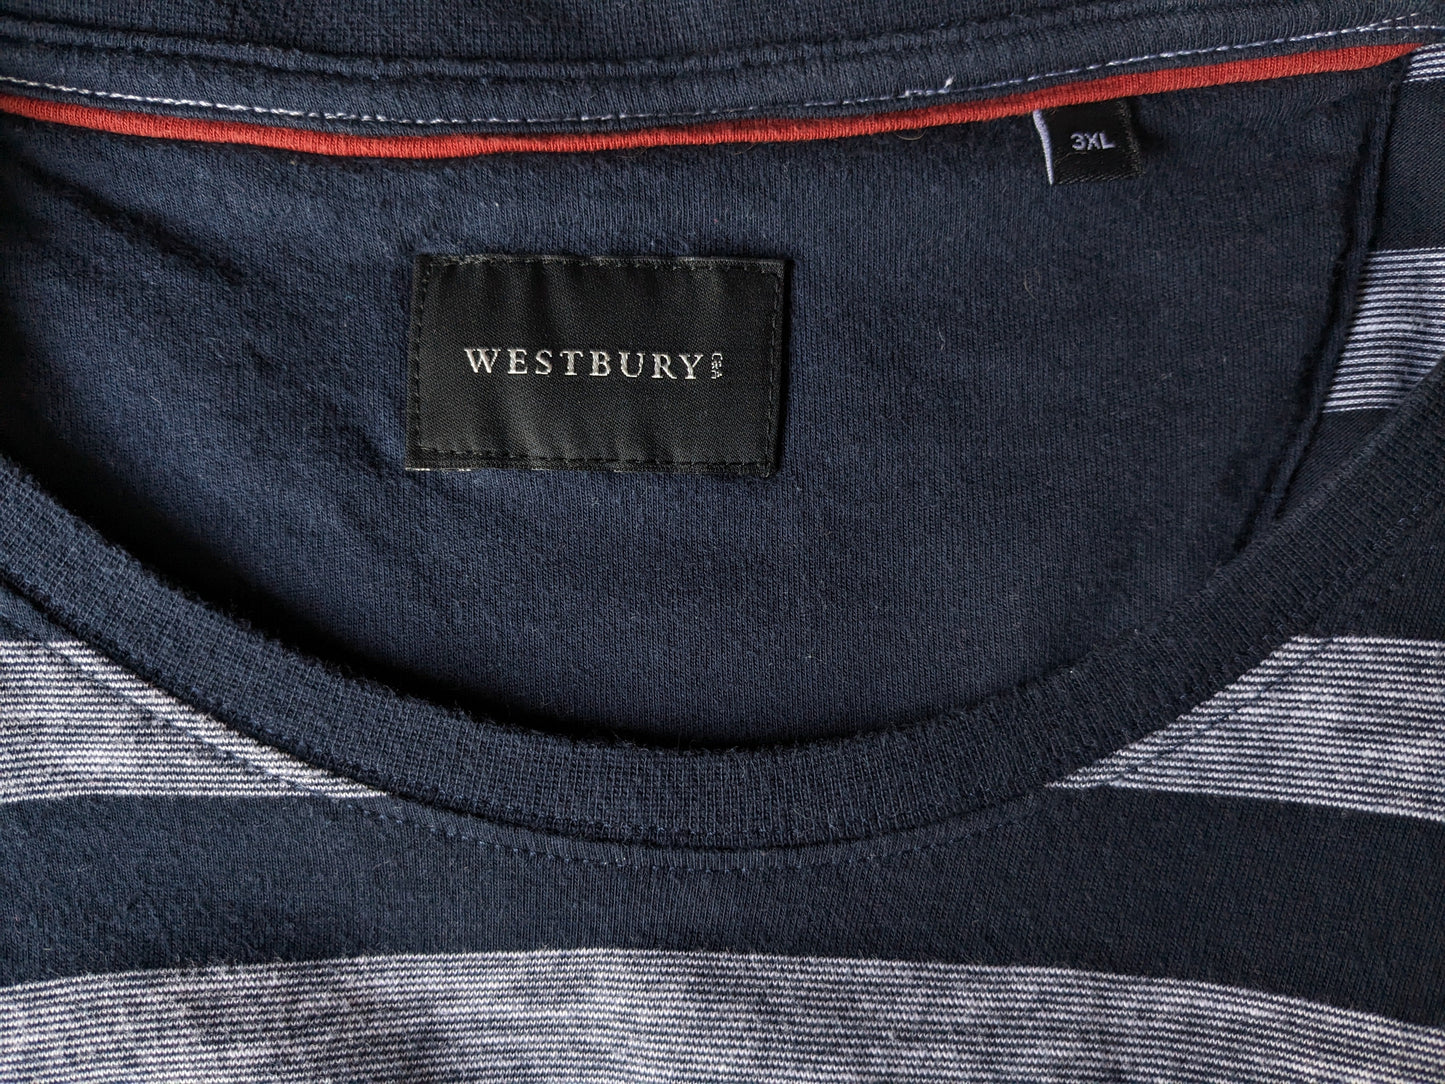 Westbury -Hemd. Blau grau gestreift. Größe 3xl / xxxl.